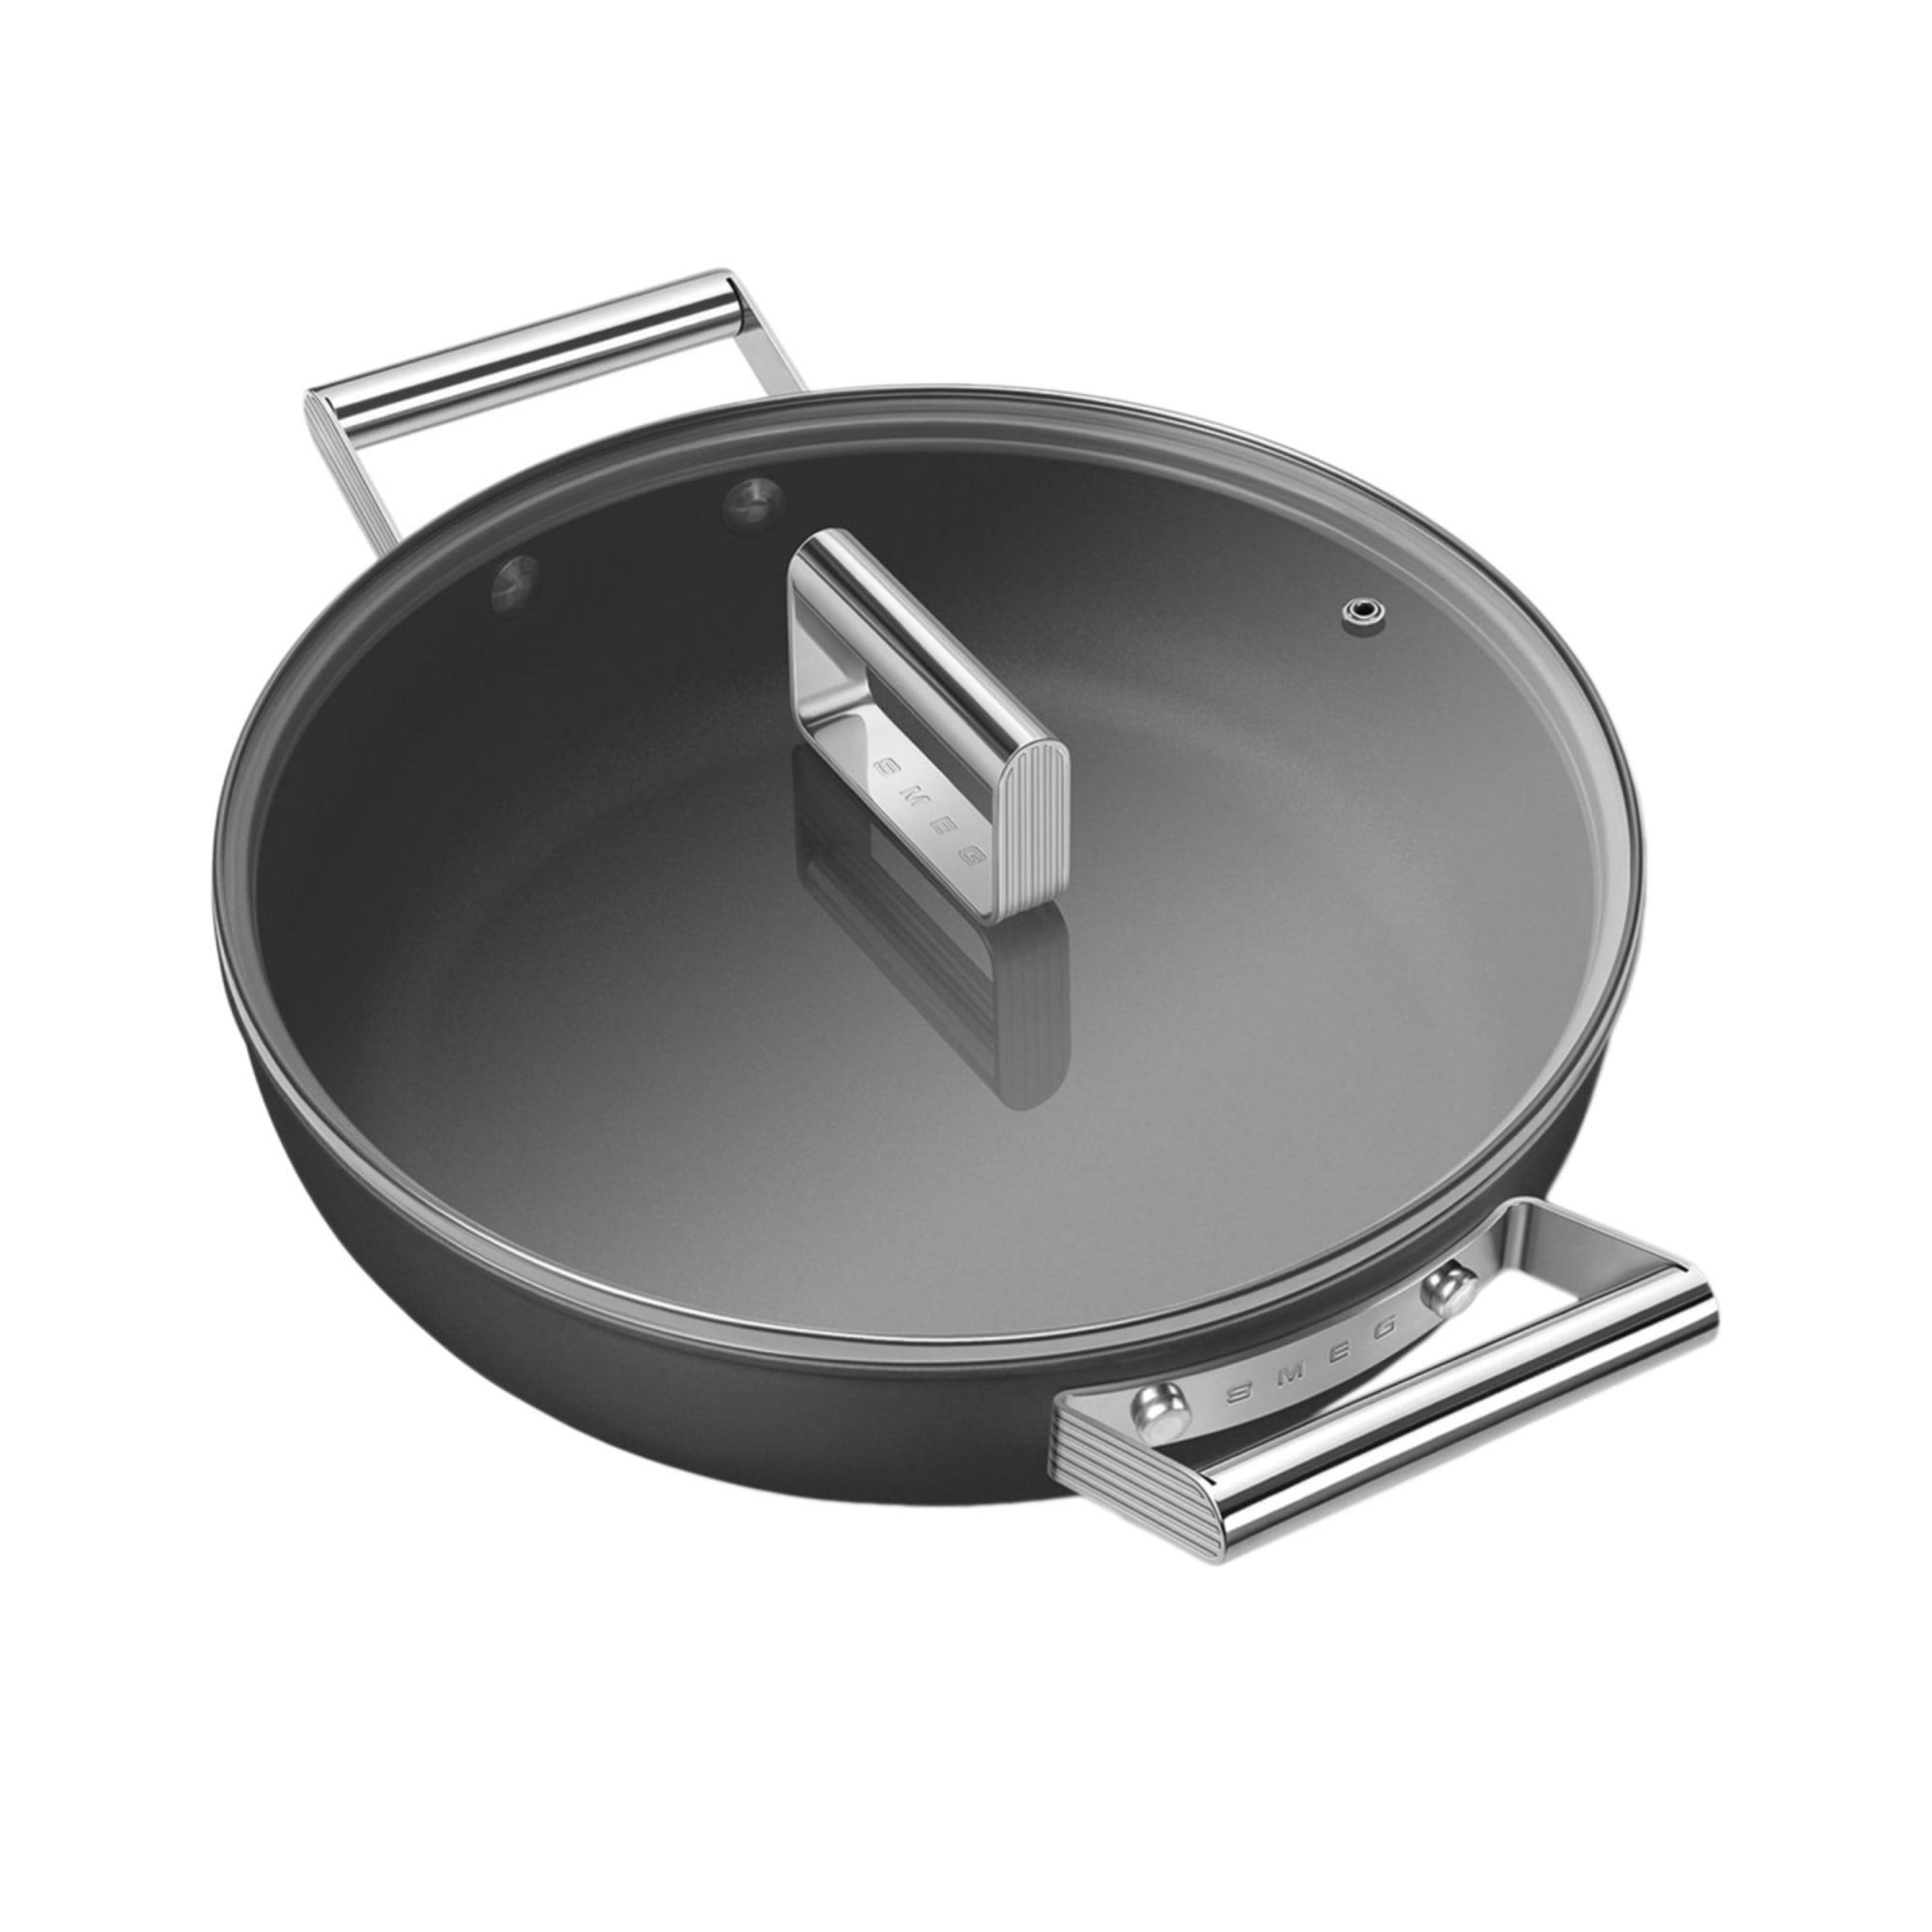 Smeg Non Stick Chef's Pan with Lid 28cm - 3.7L Black Image 5